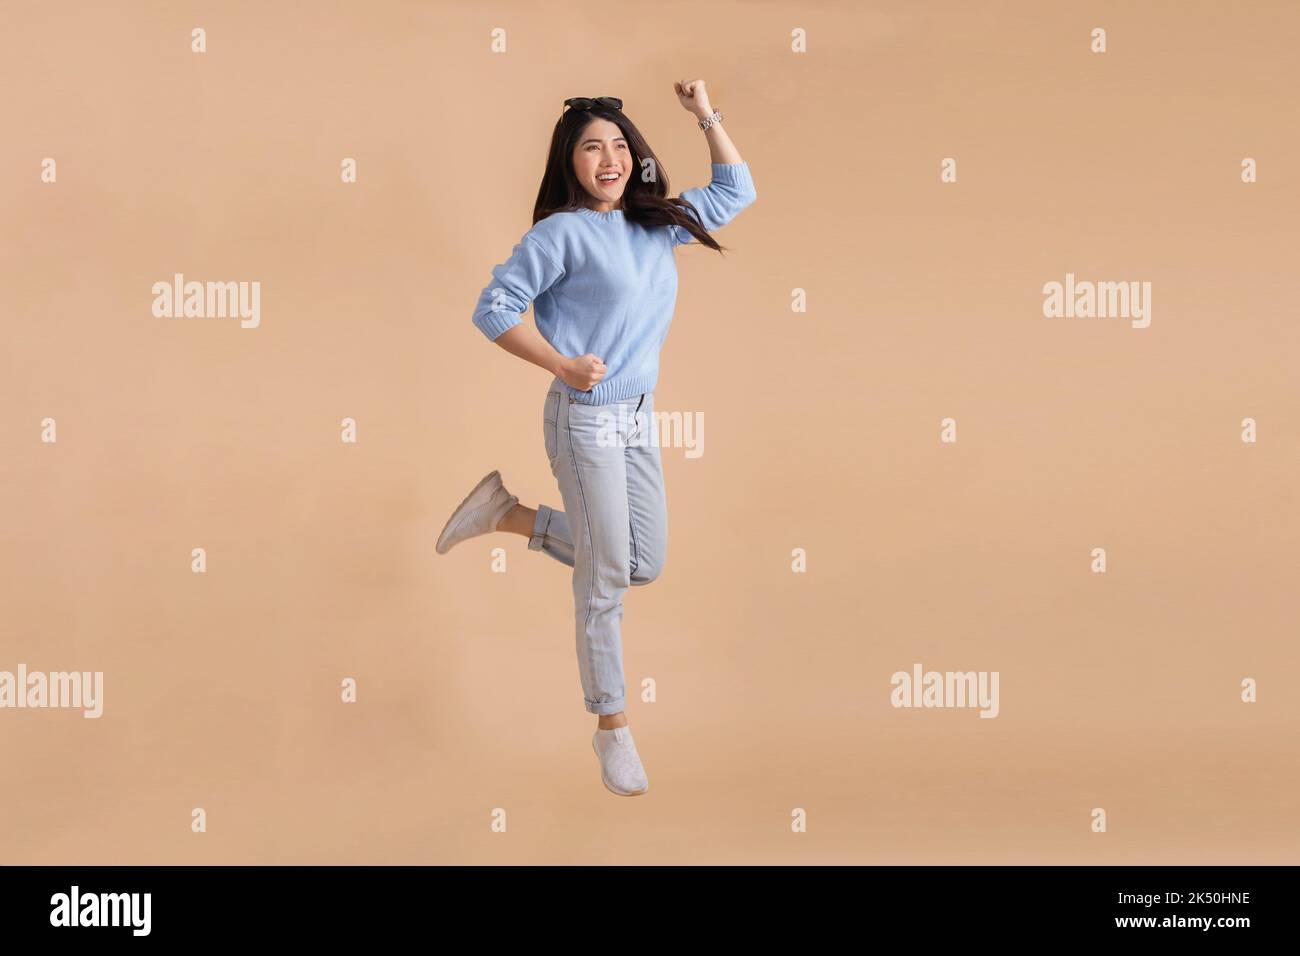 Glücklich lächelnde asiatische Frau mit Springen in der Luft hob ihre Hände in blauen Pullover und Jeans isoliert auf beigefarbenen Hintergrund. Ganzkörperlänge in Studioaufnahmen. Stockfoto